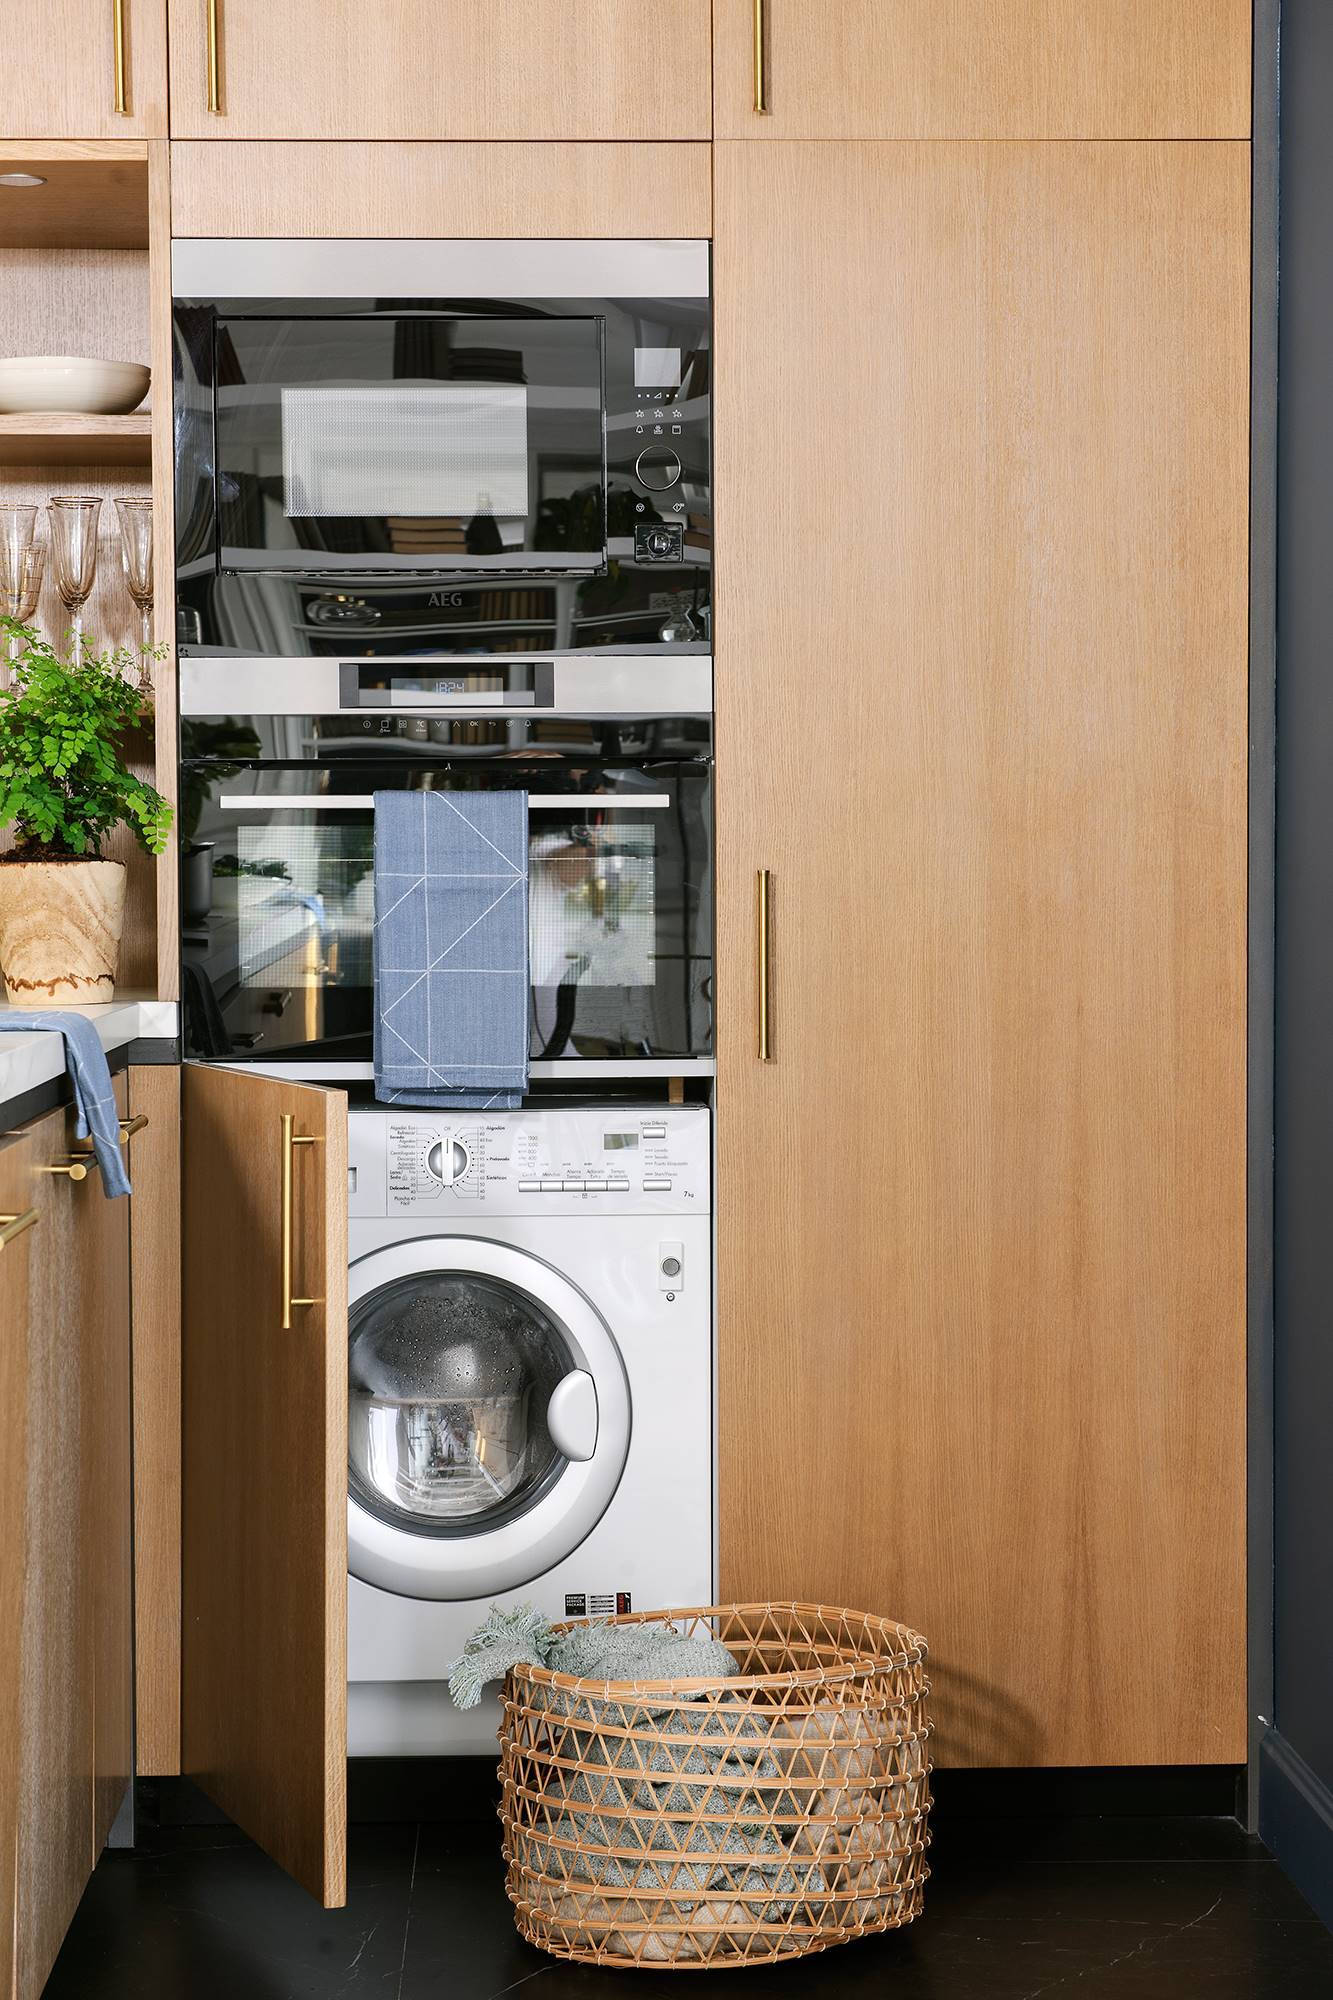 Cocina con electrodomésticos instalados en triple torre: lavadora + hornos.